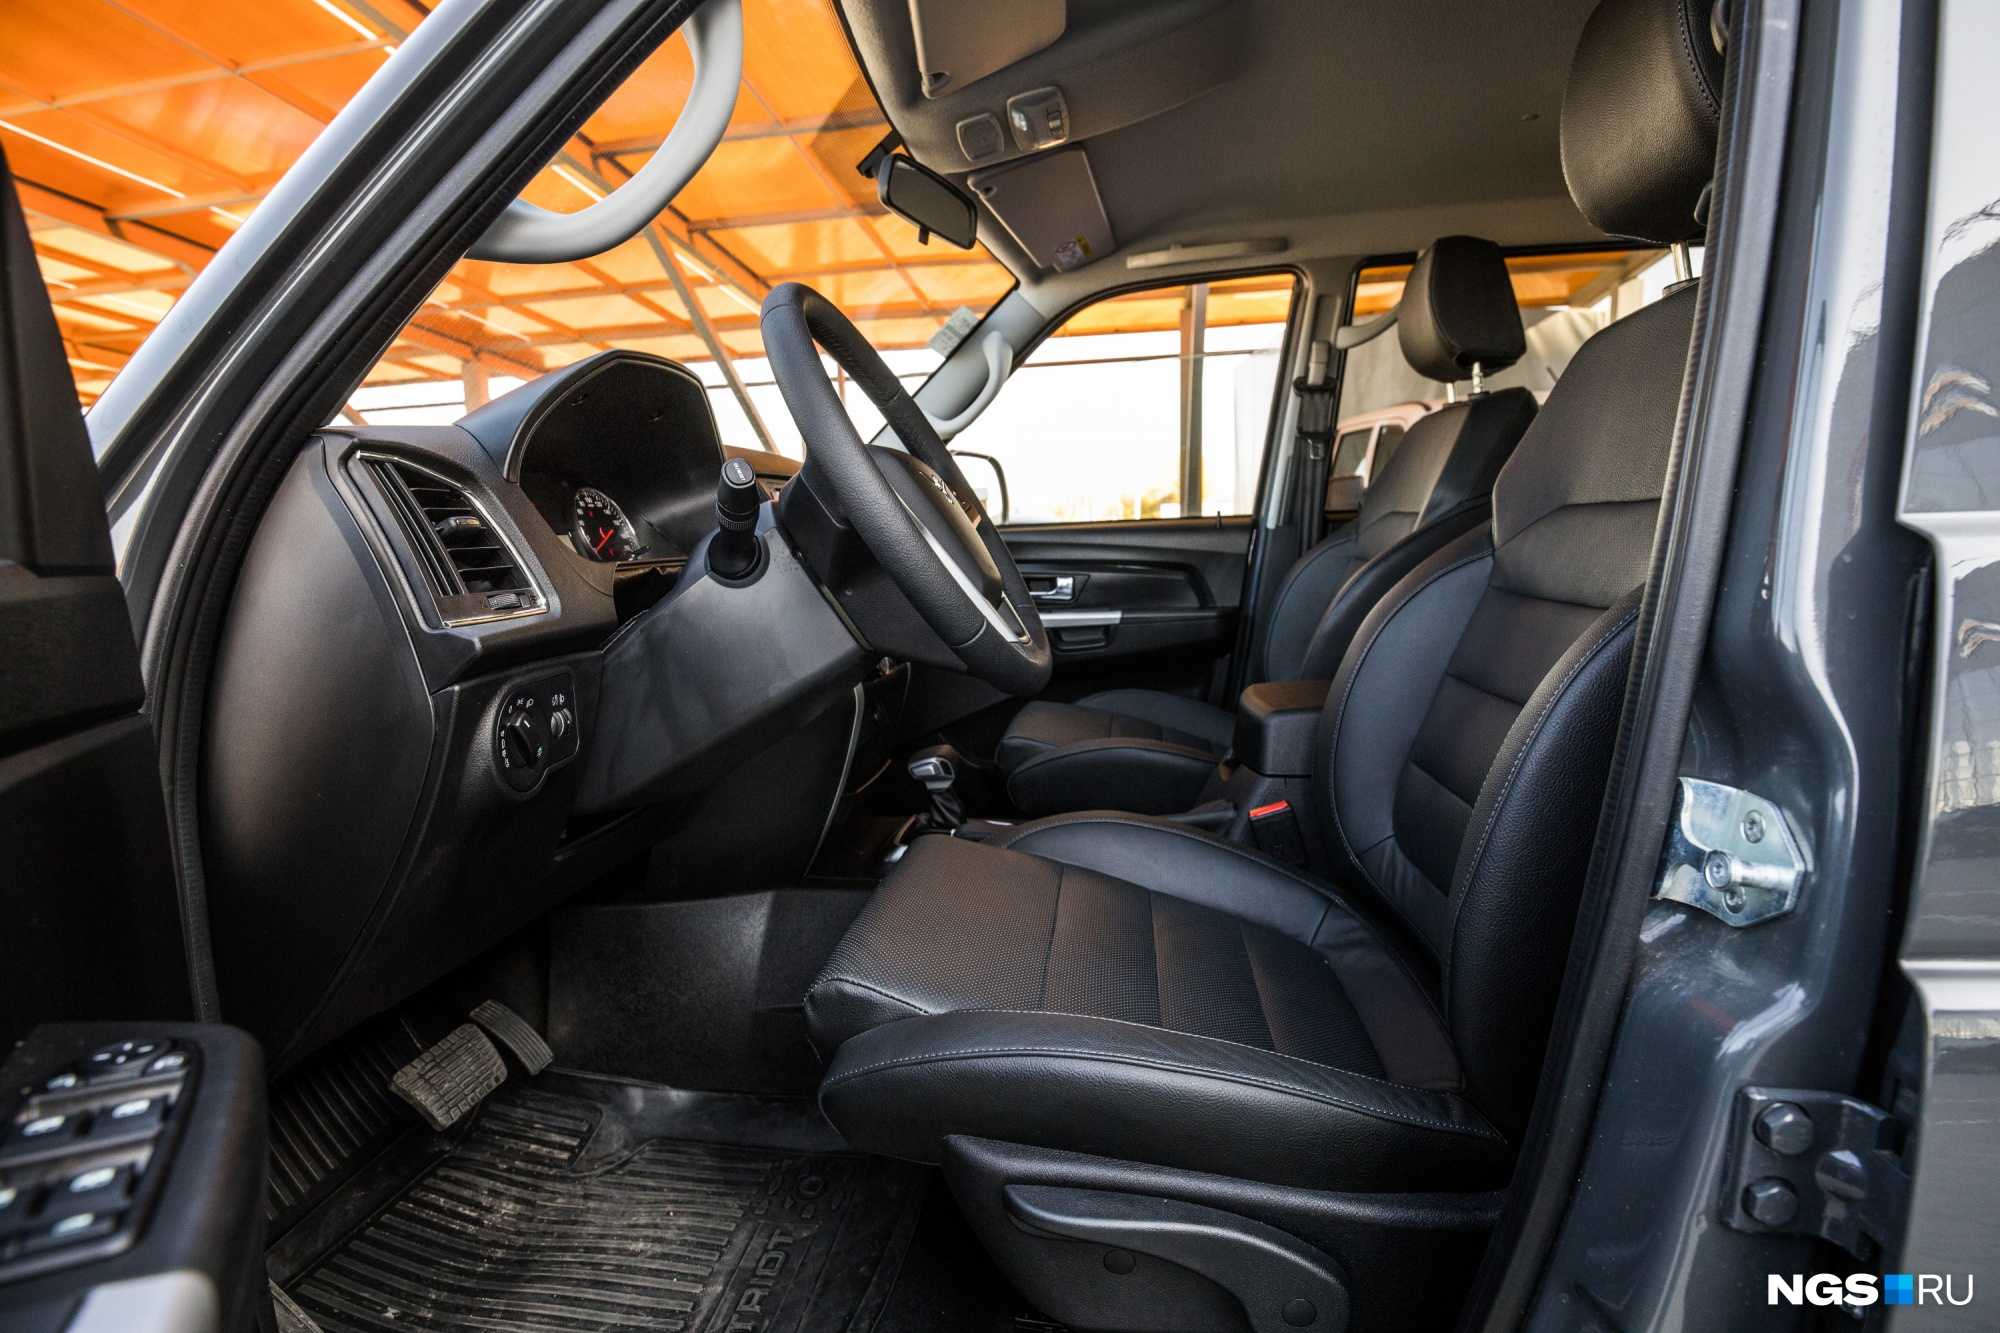 На Ульяновском автозаводе 20 сентября стартовало производство обновленного УАЗ Патриот 2019 модельного года